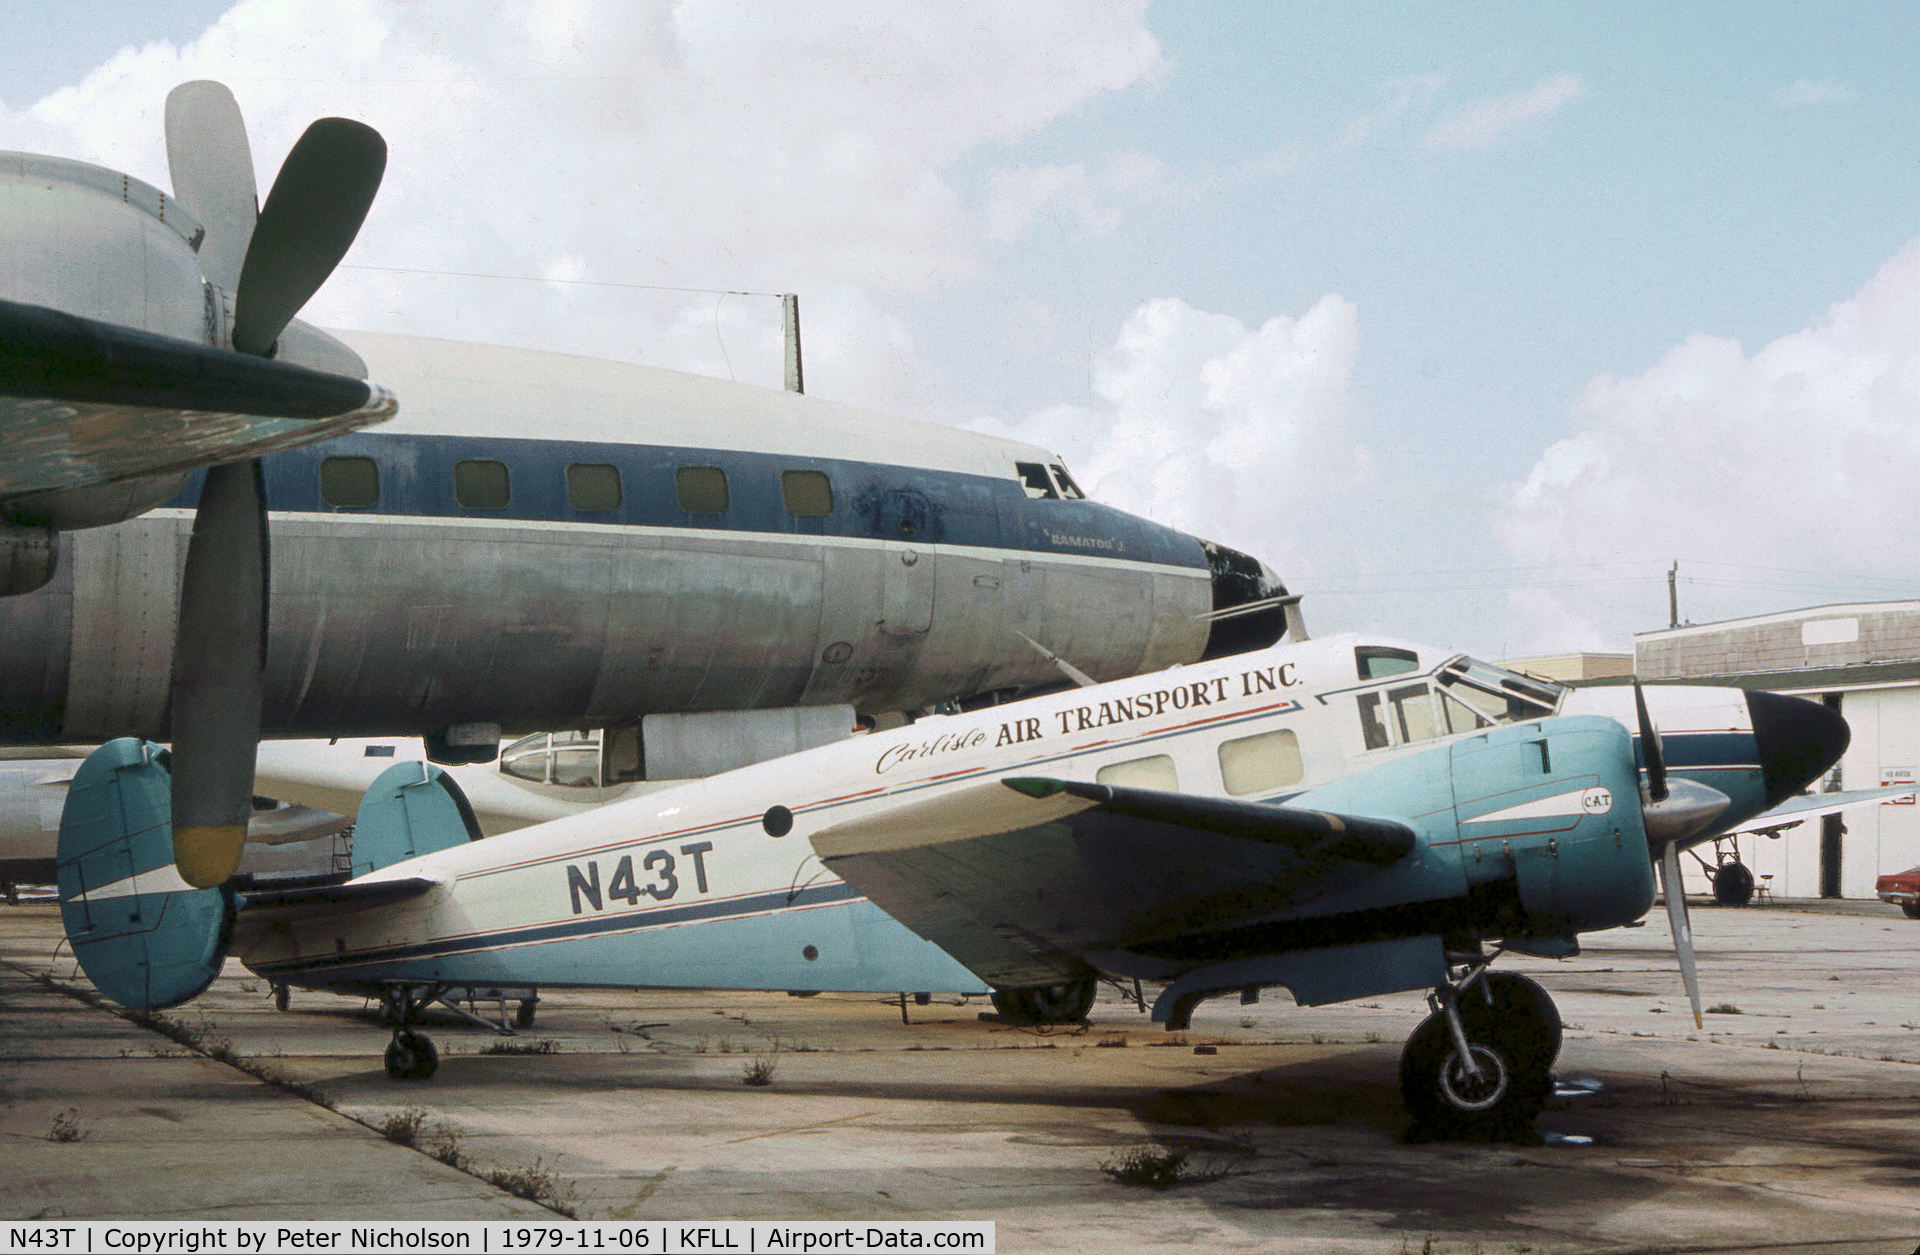 N43T, 1956 Beech E18S C/N BA-182, Beech E18S as seen at Fort Lauderdale in November 1979.